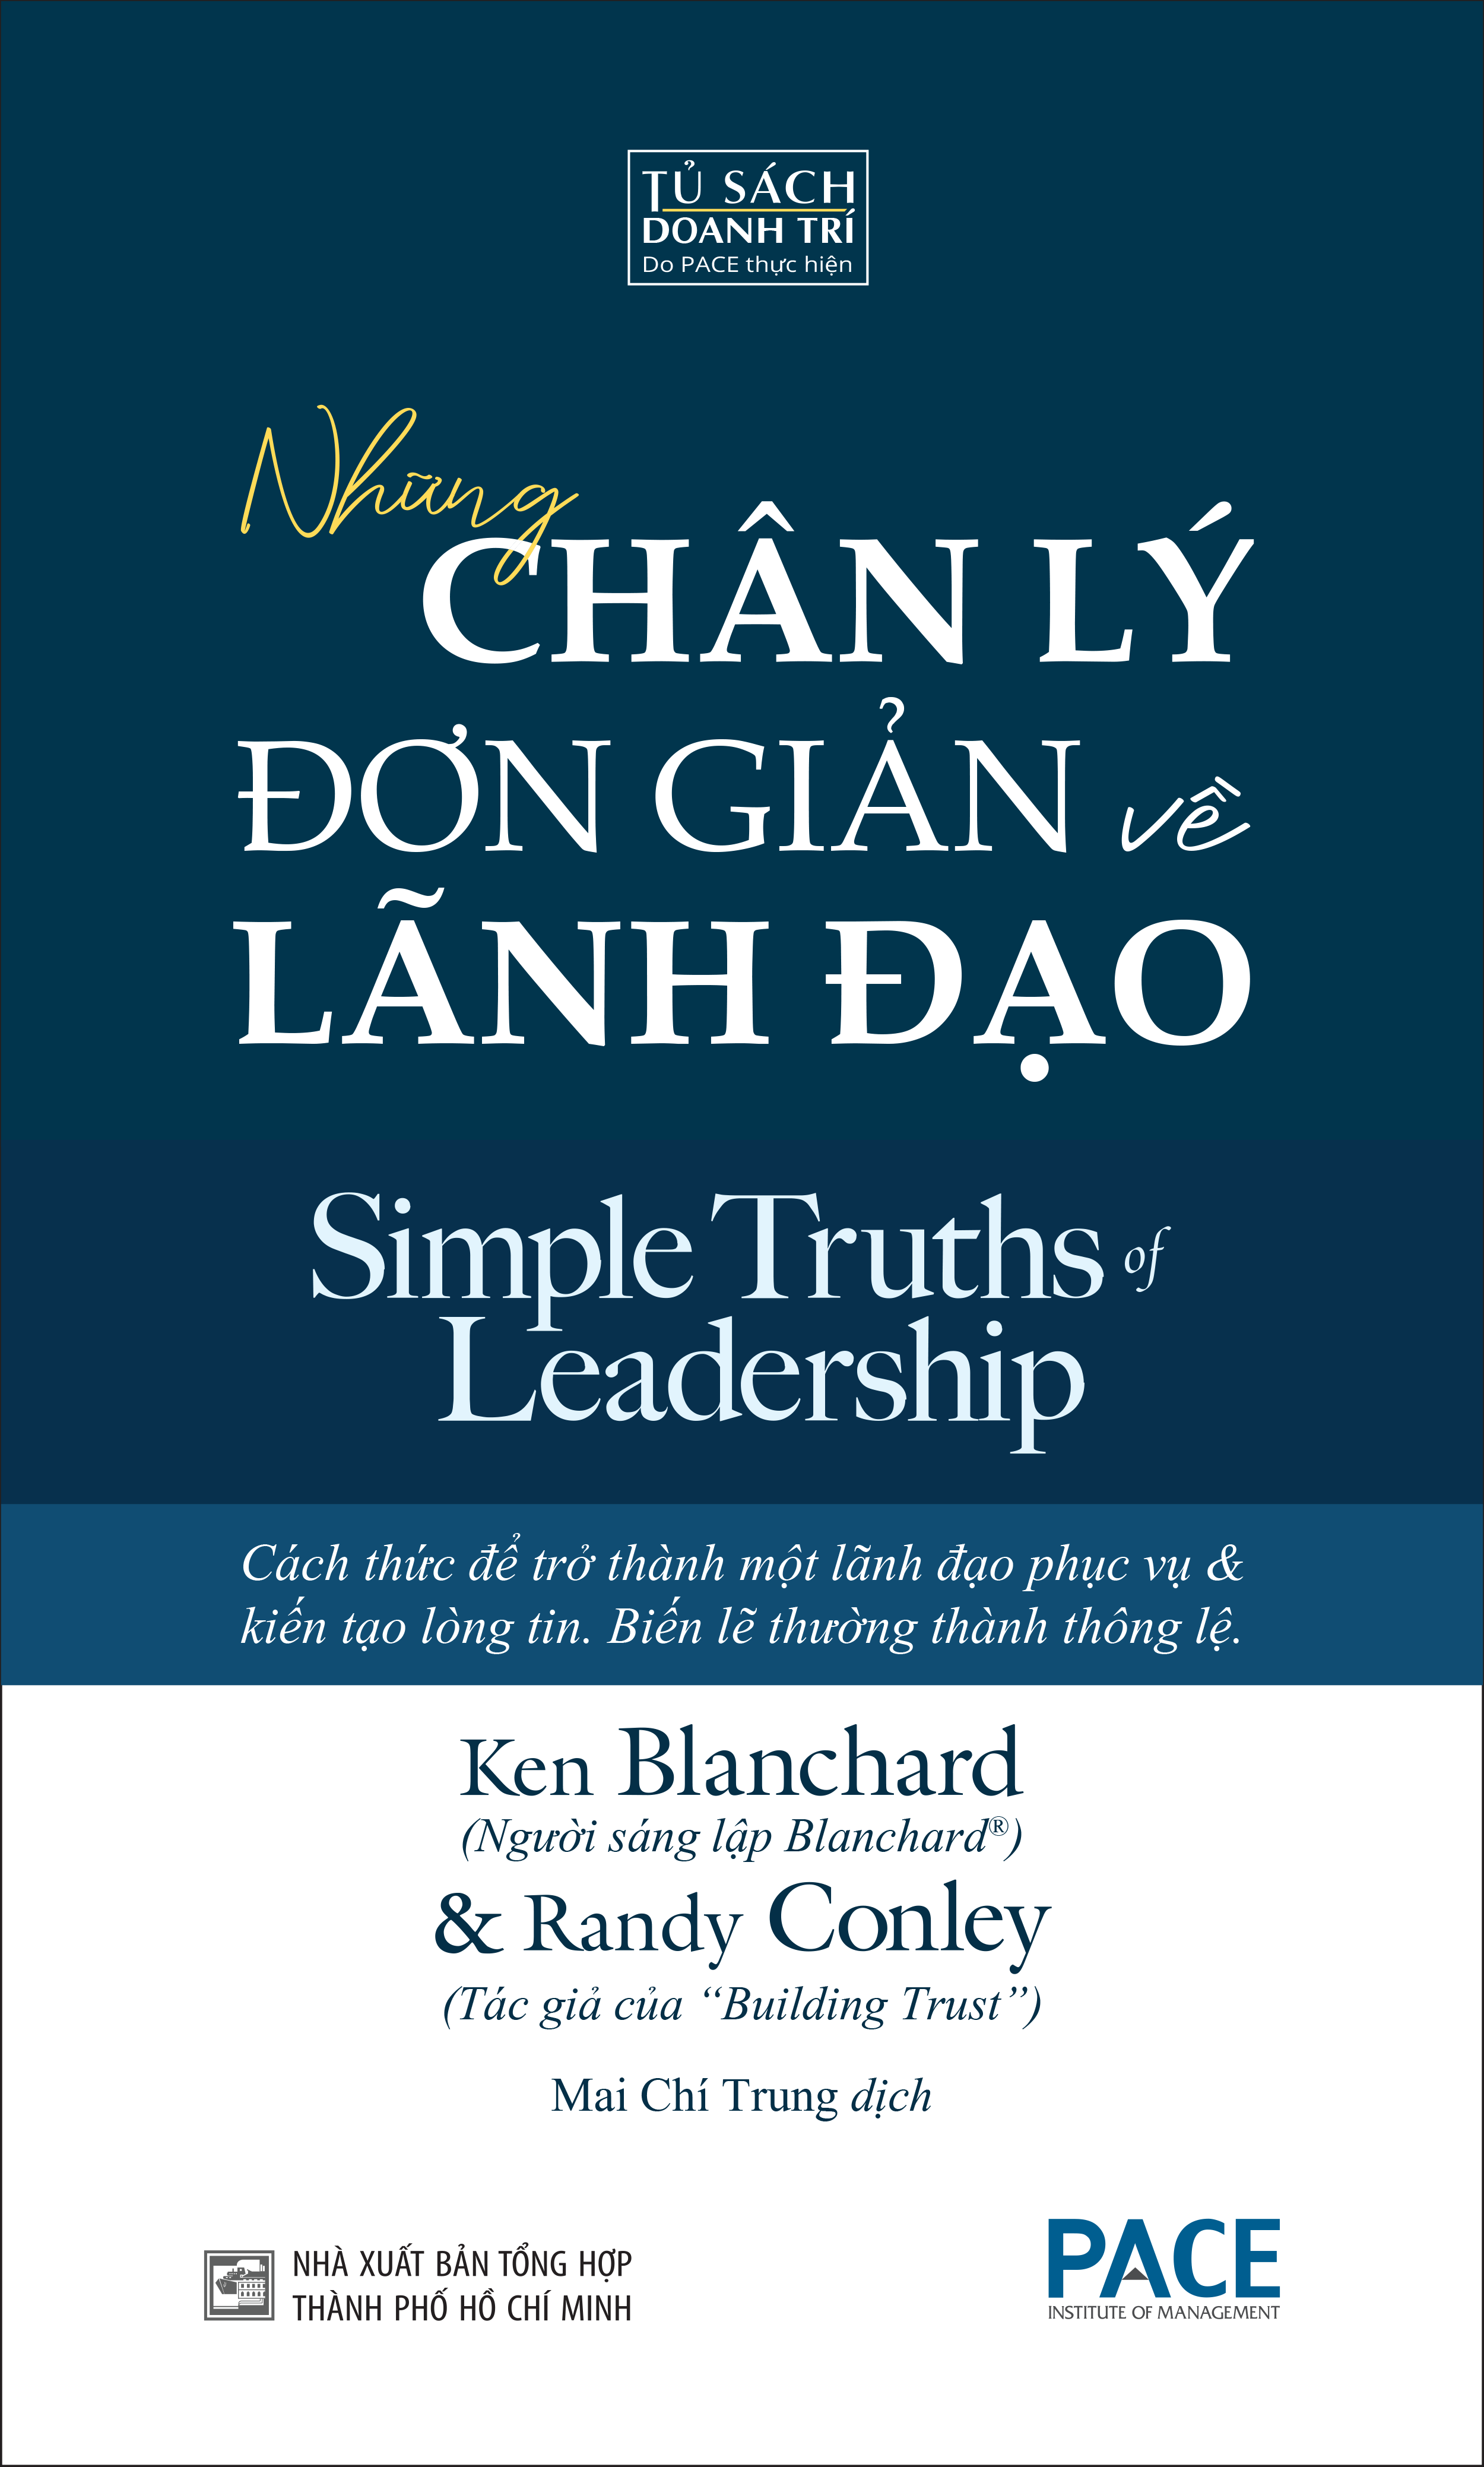 Sách PACE Books - Những Chân Lý Đơn Giản Về Lãnh Đạo (Simple Truths of Leadership) - Ken Blanchard và Randy Conley